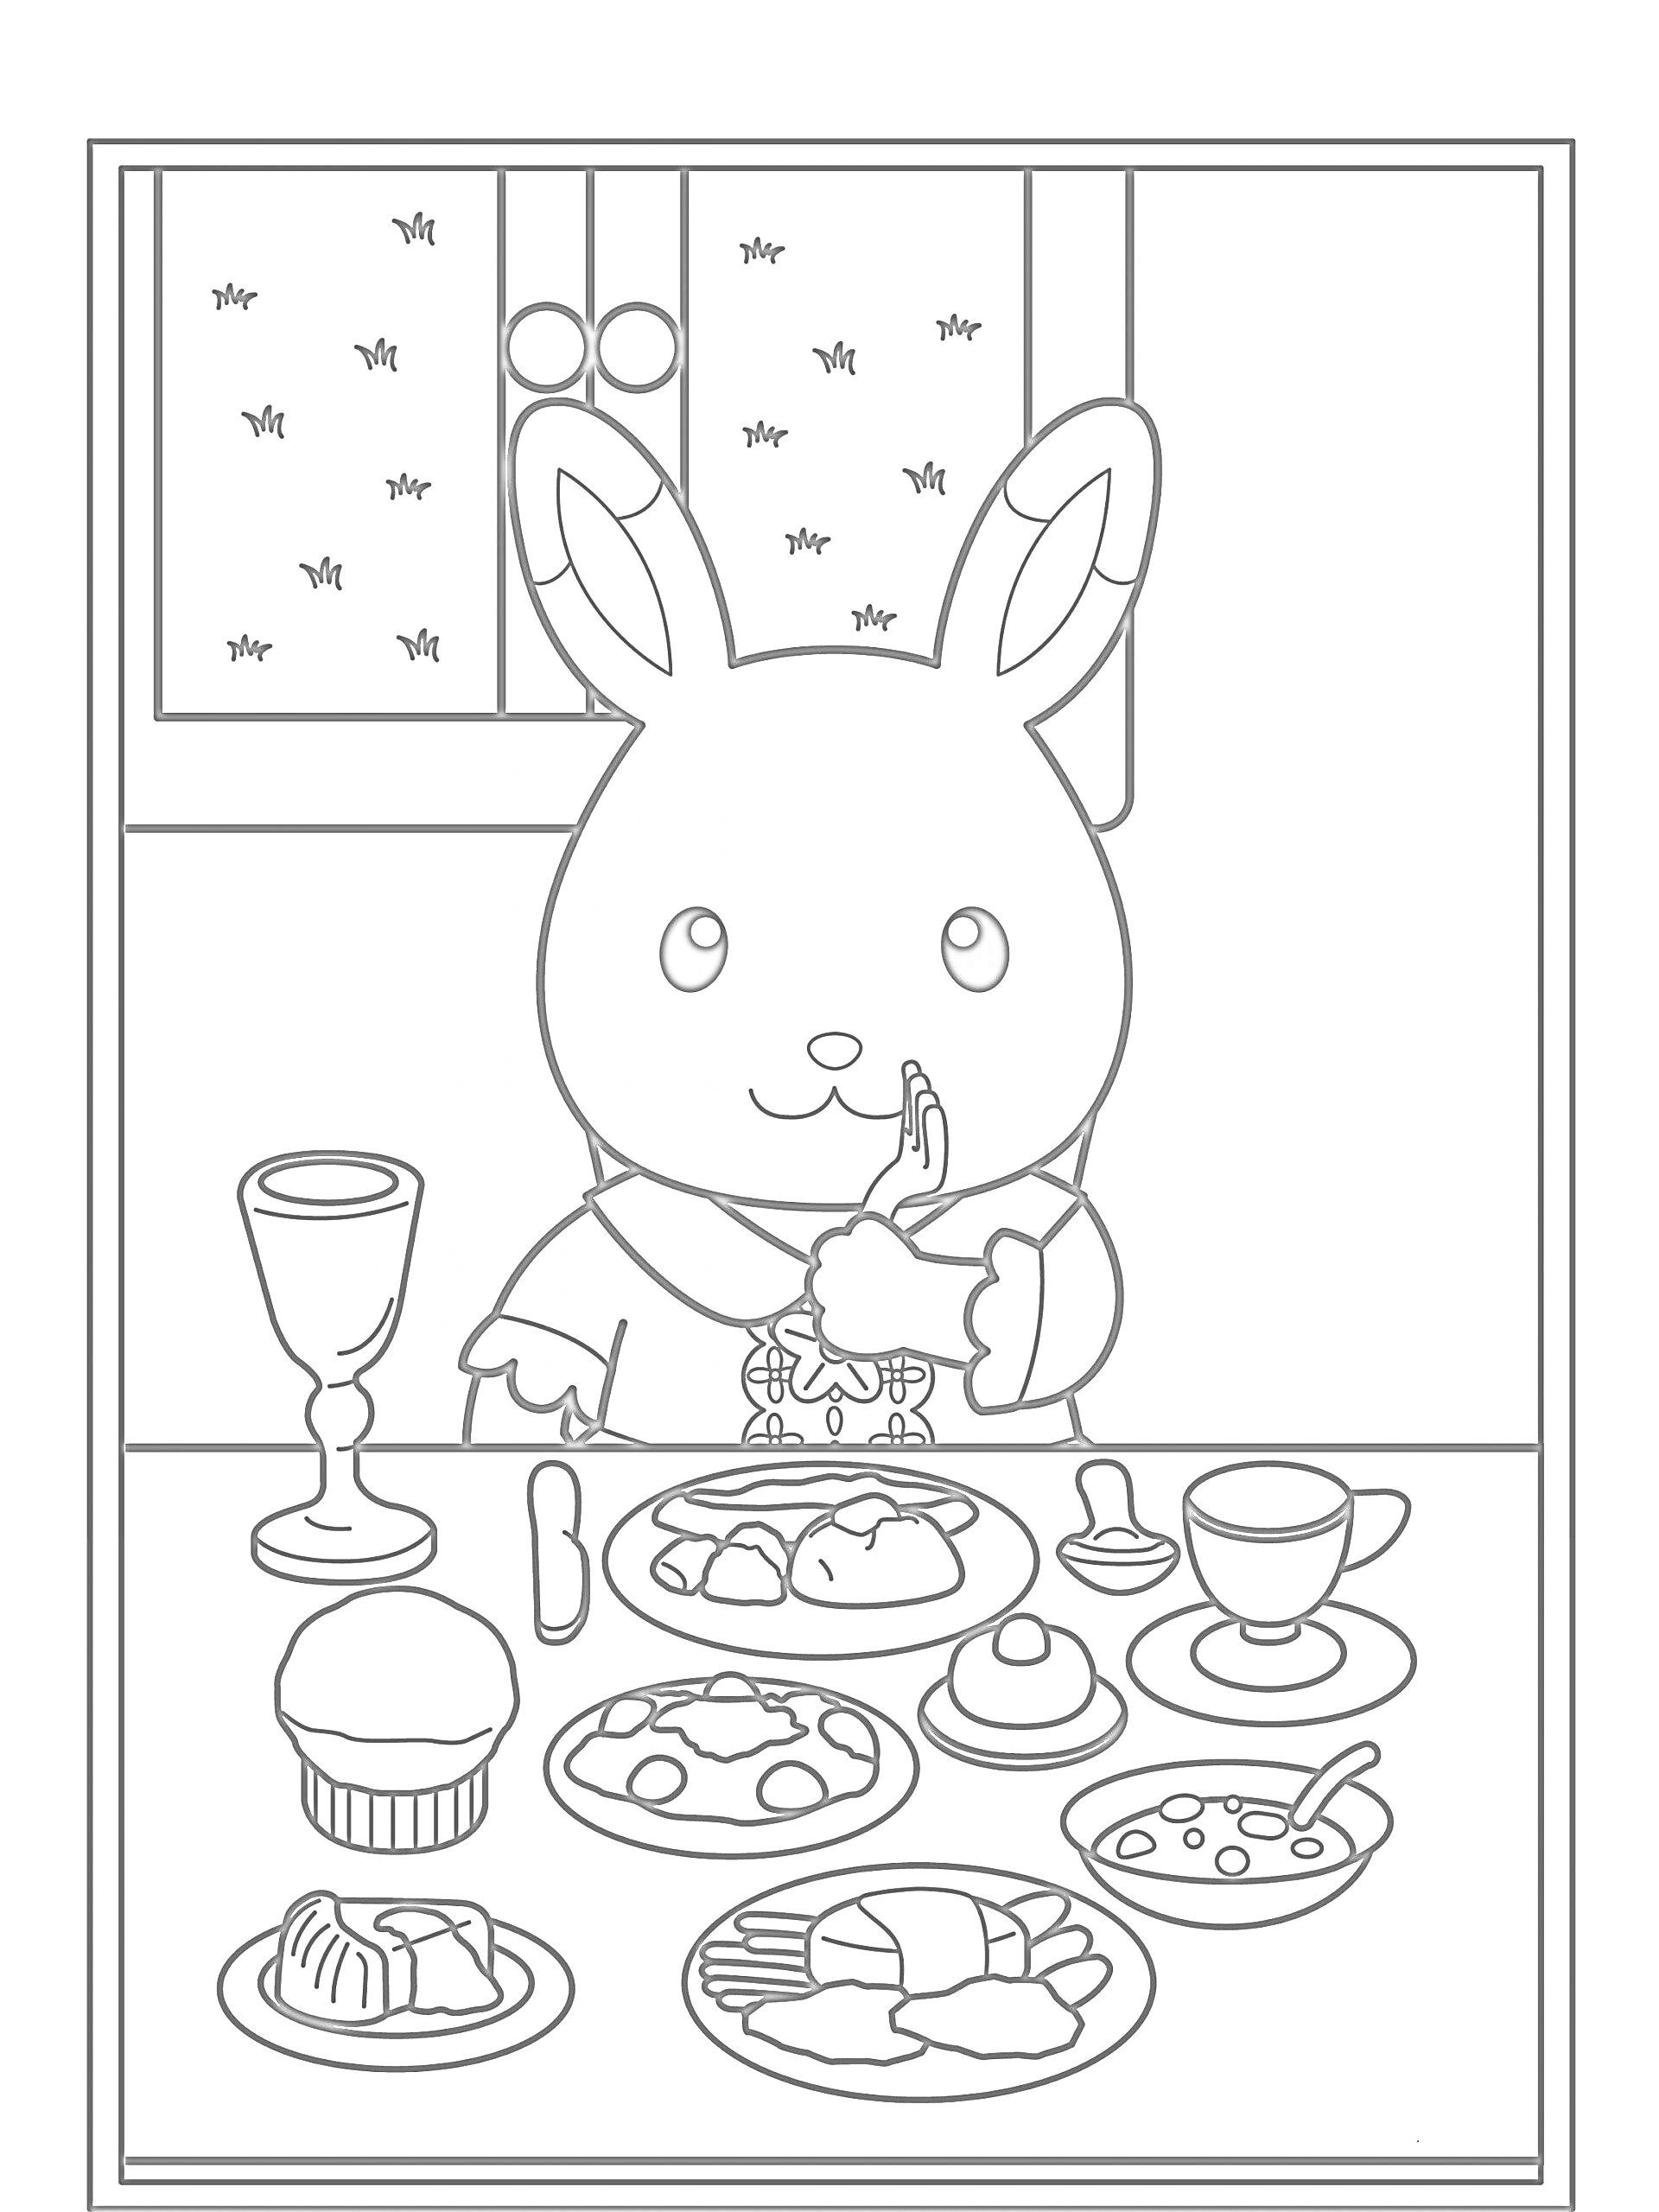 Раскраска Зайчик в костюме за столом со множеством блюд и напитков